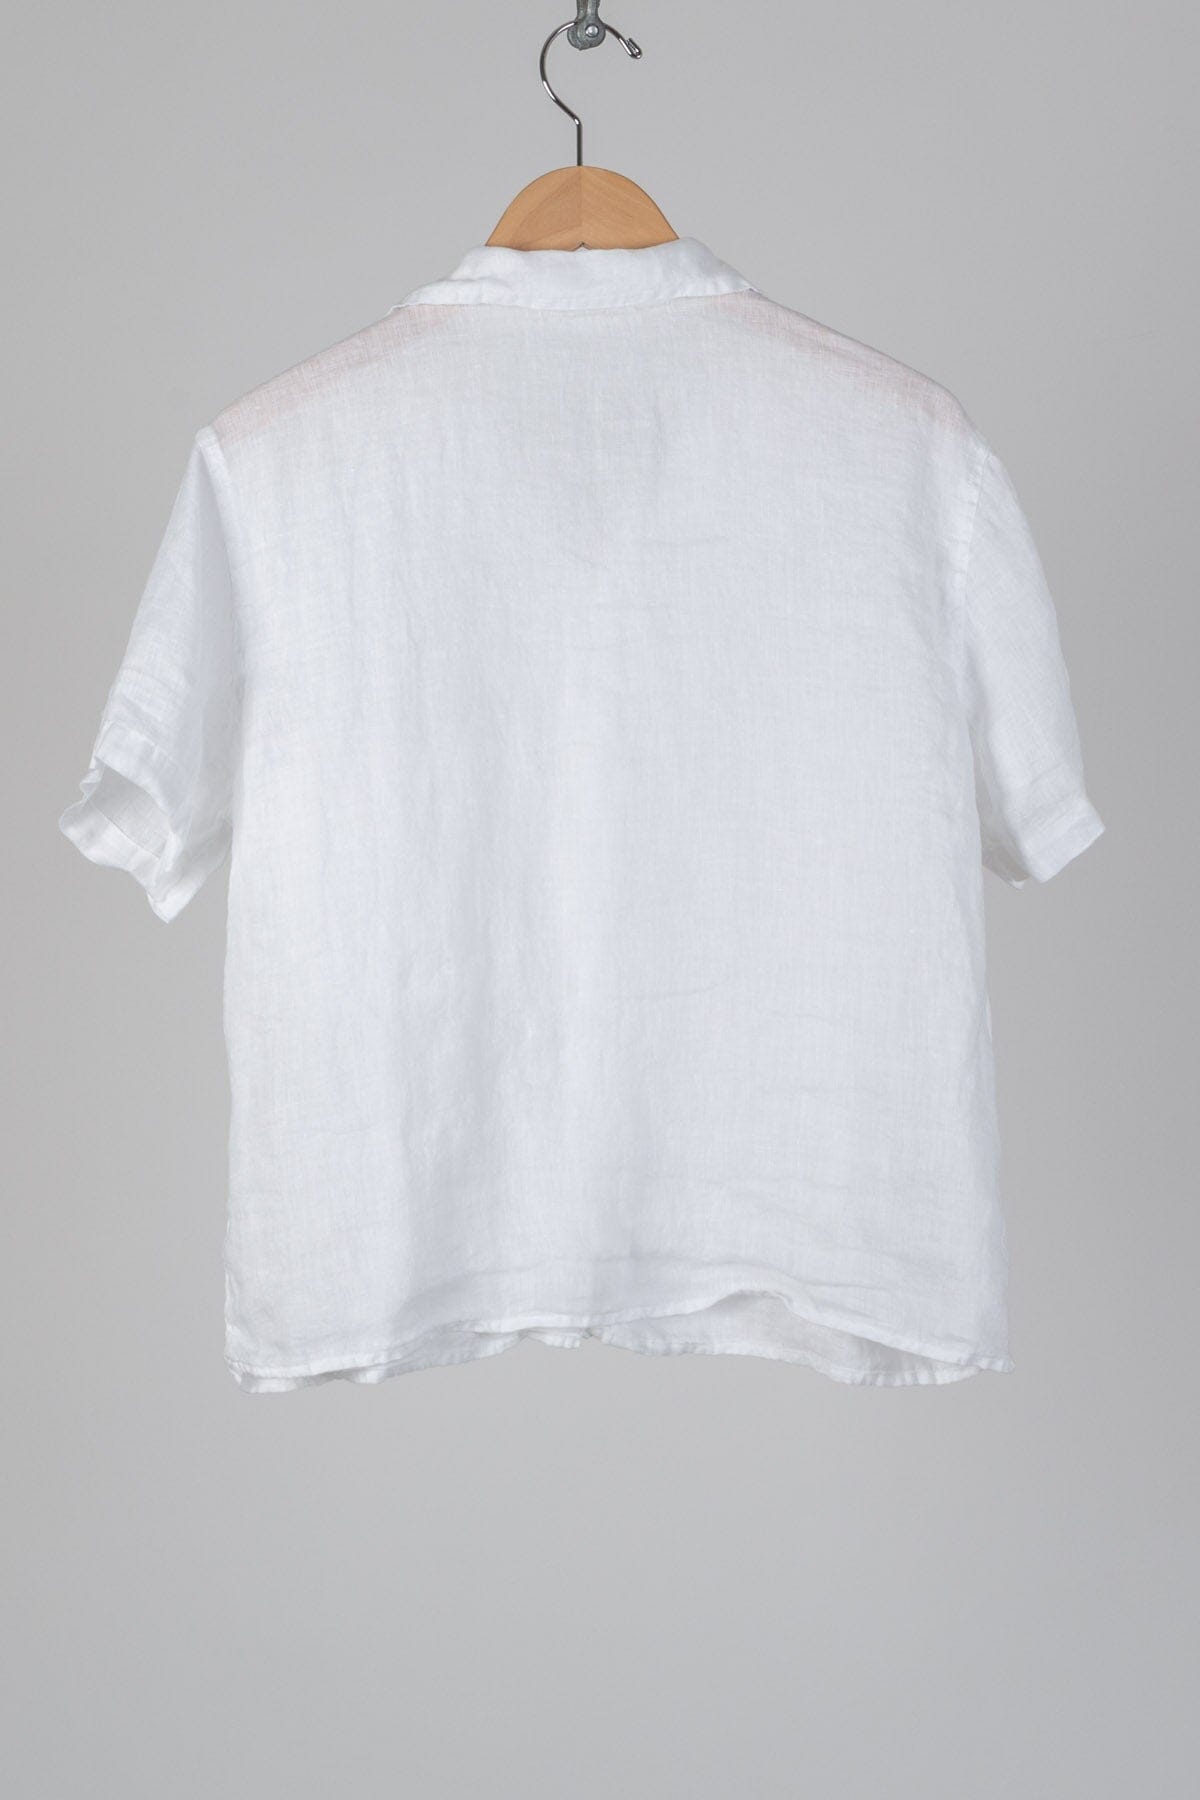 Nic - Linen S10 - Linen Shirt/Top/Tunic CP Shades 